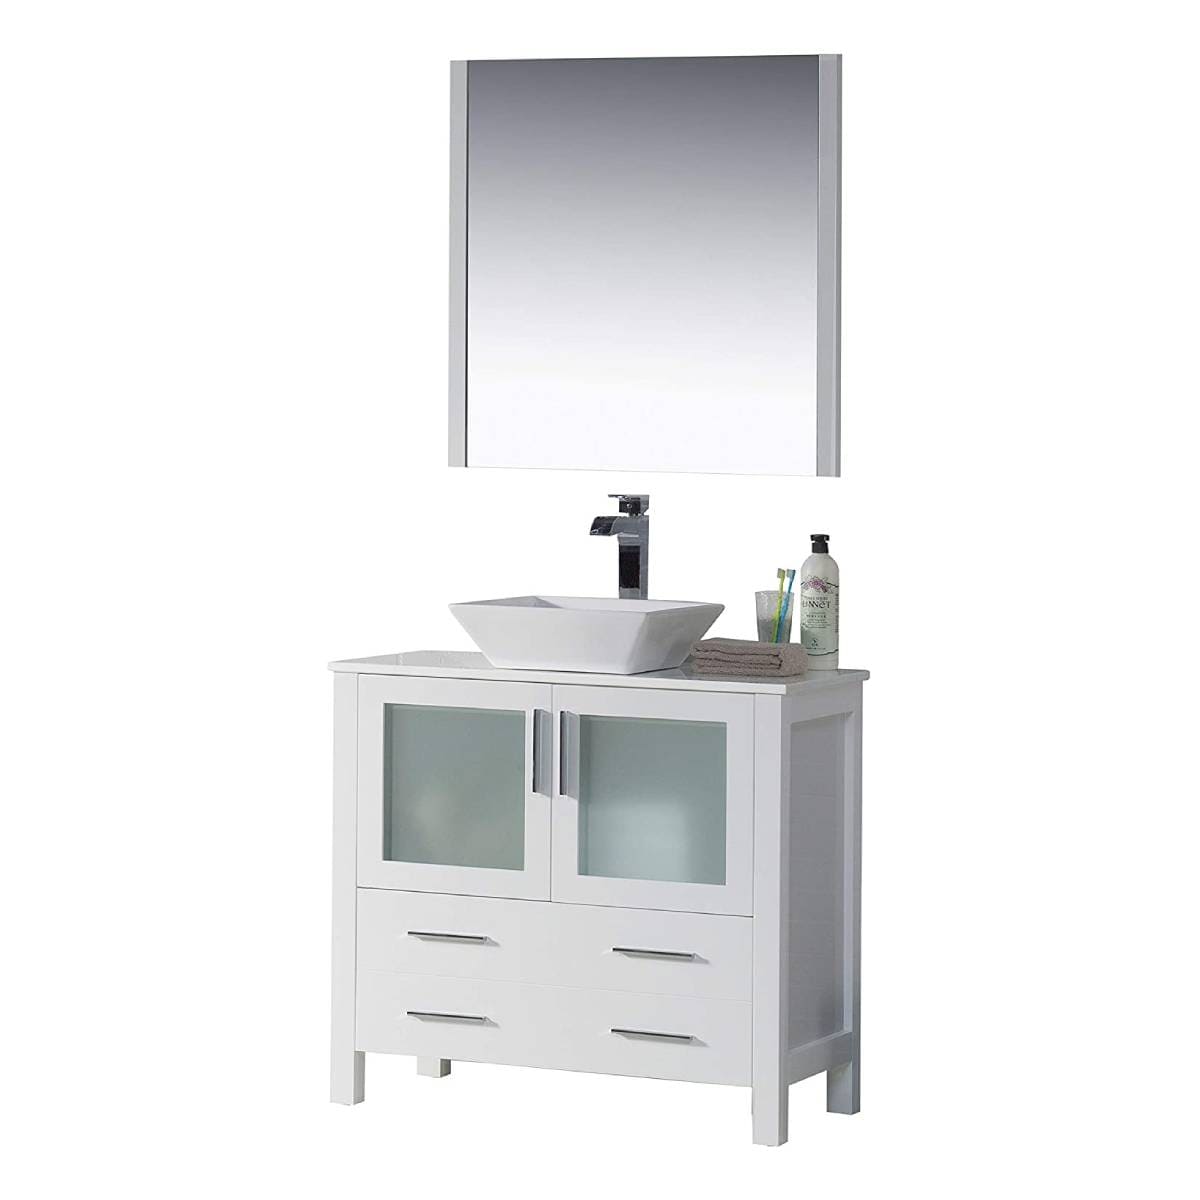 Sydney - 36 Inch Vanity with Ceramic Vessel Sink & Mirror - White - Molaix842708124509Sydney001 36 01 V M